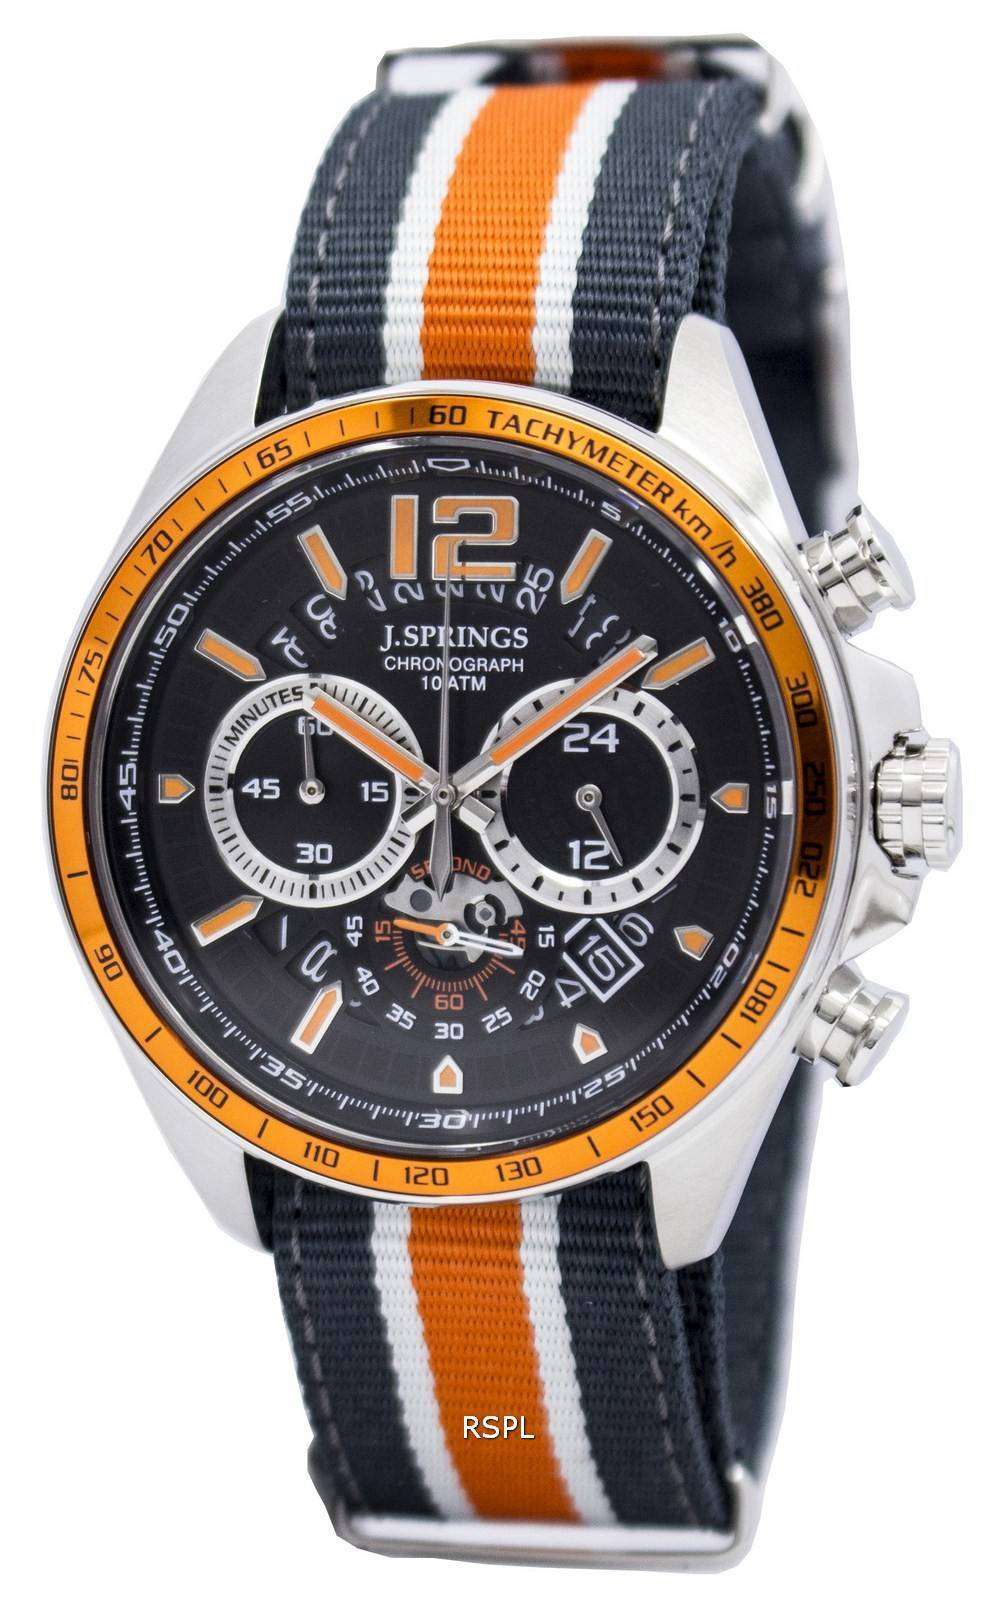  by Seiko Motor Sports Chronograph 100M BFJ005 Men's Watch -  